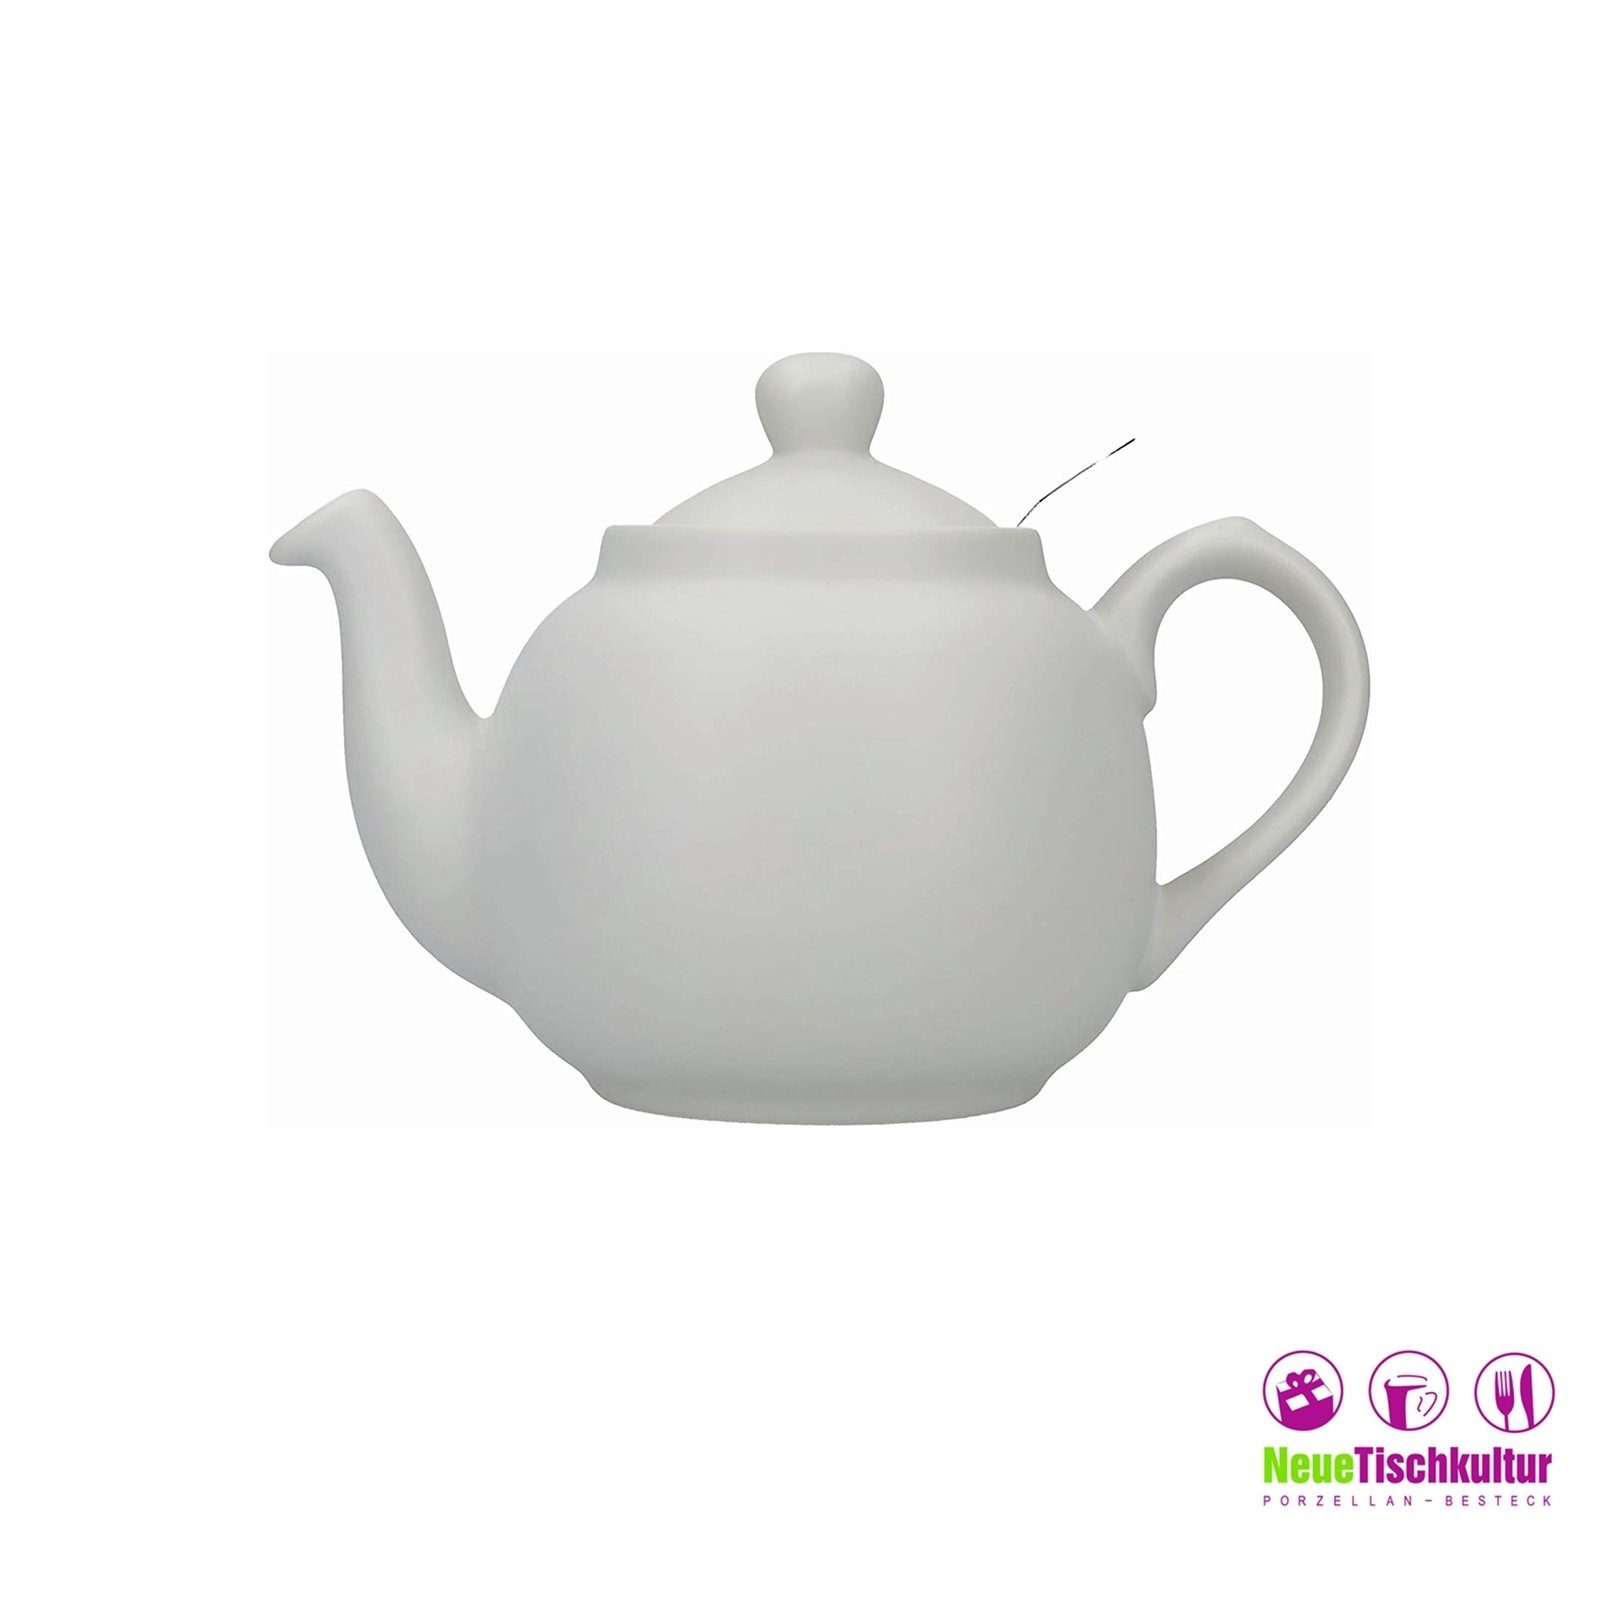 l Keramik/Edelstahlsieb, für 1.5 Tassen, Neuetischkultur Grau 6 Nordisch Teekanne Teekanne,